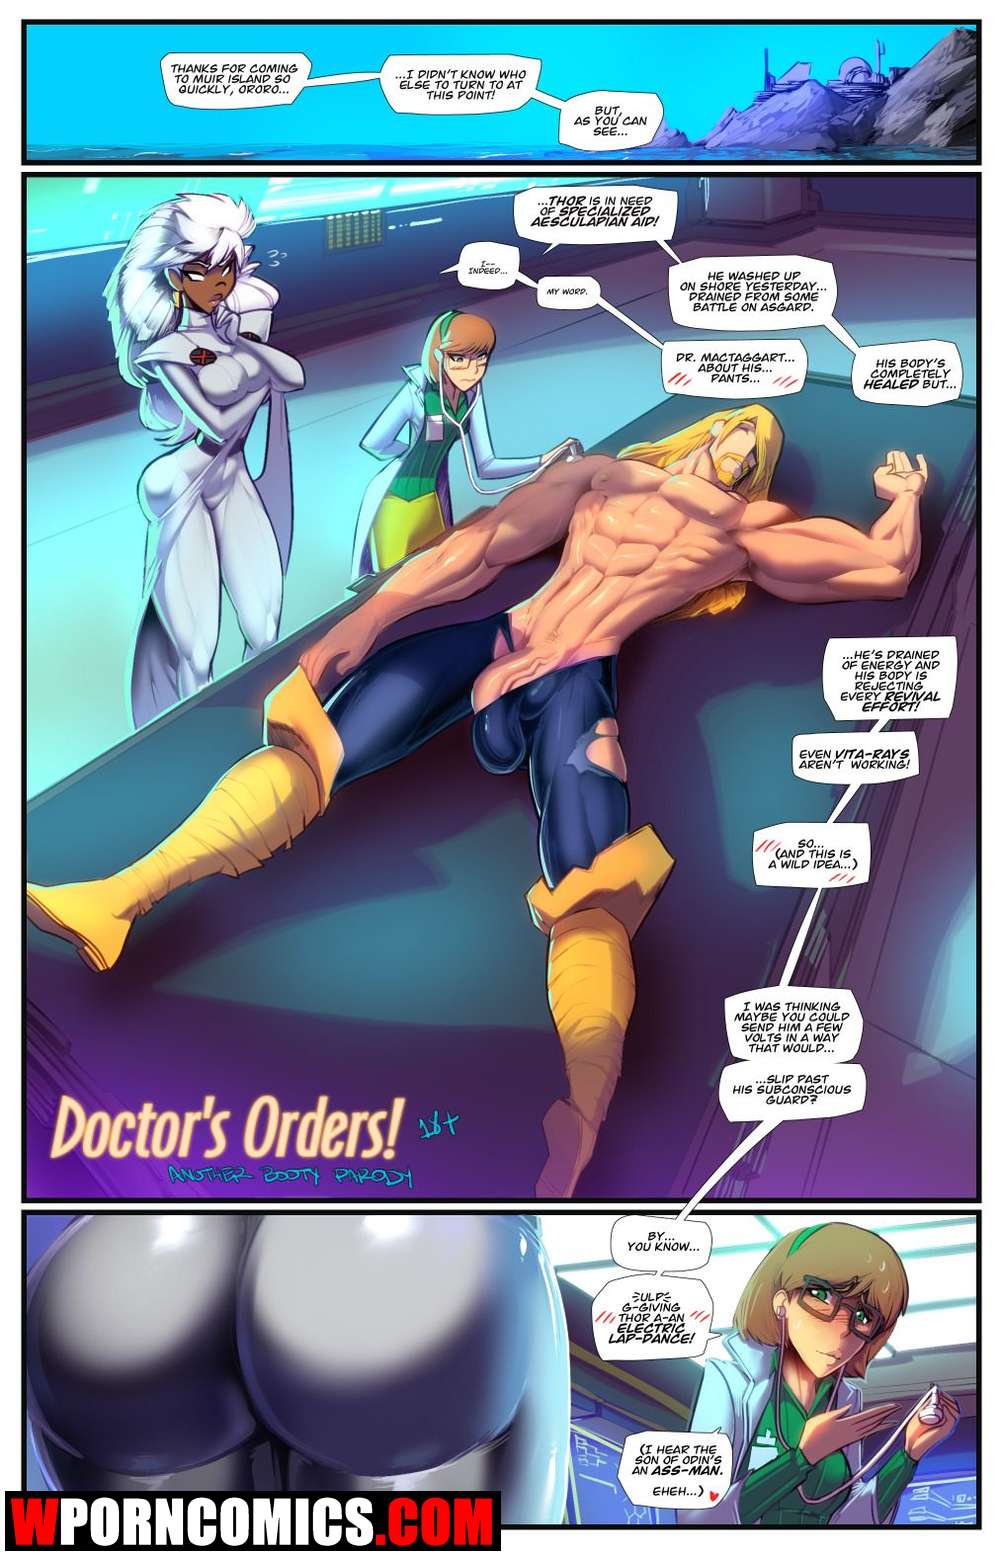 17 Xx Hd - âœ…ï¸ Porn comic Doctor s Orders. X-Men , The Avengers. Sex comic of the X-Men  | Porn comics in English for adults only | sexkomix2.com